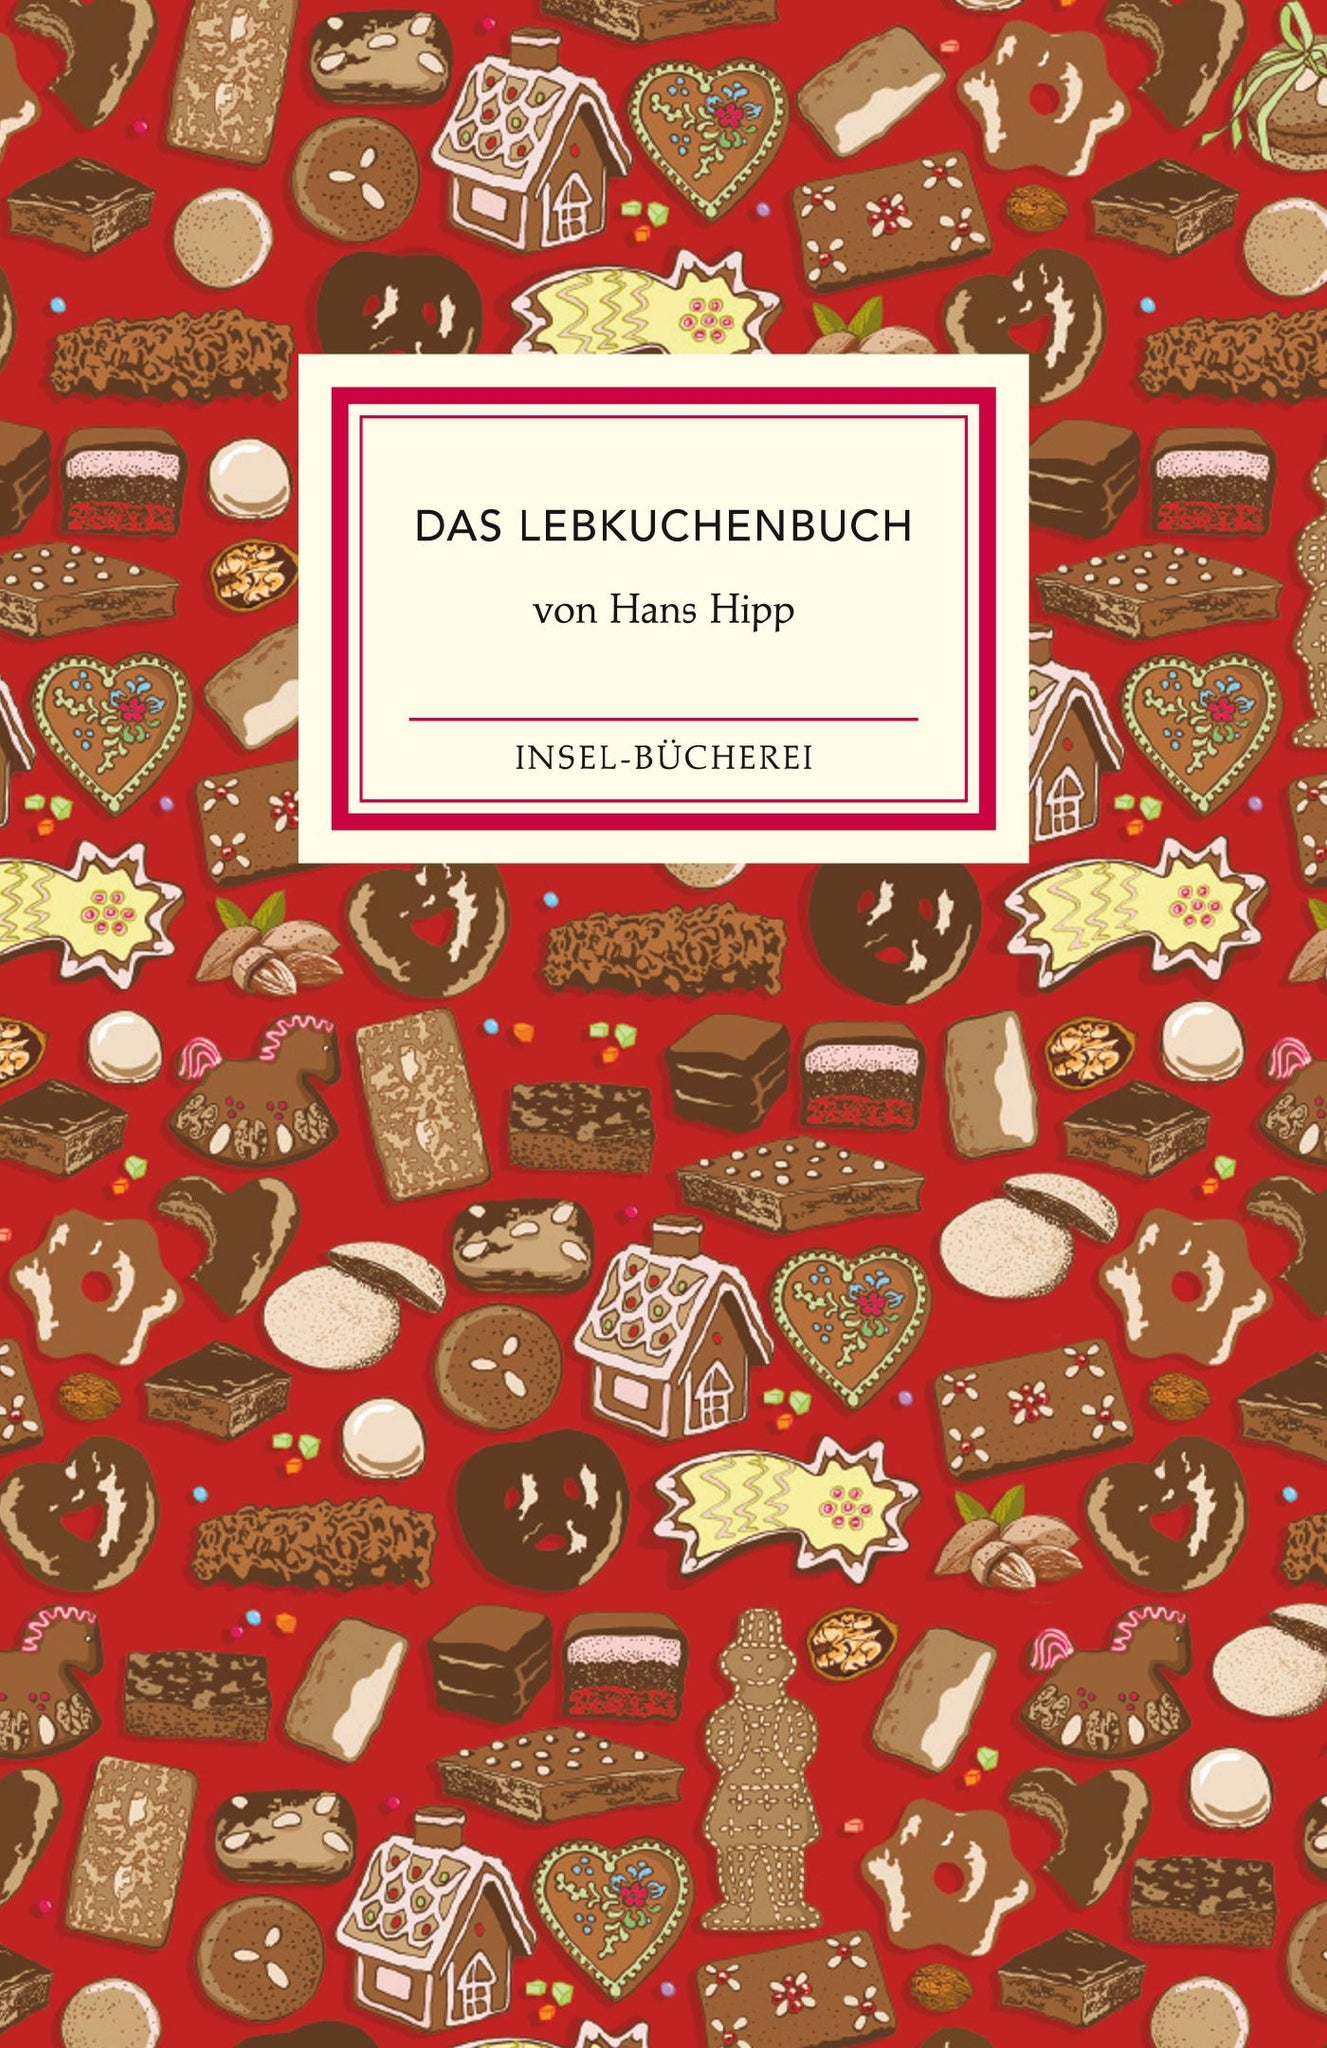 Das Lebkuchenbuch - Hans Hipp (Insel-Bücherei)